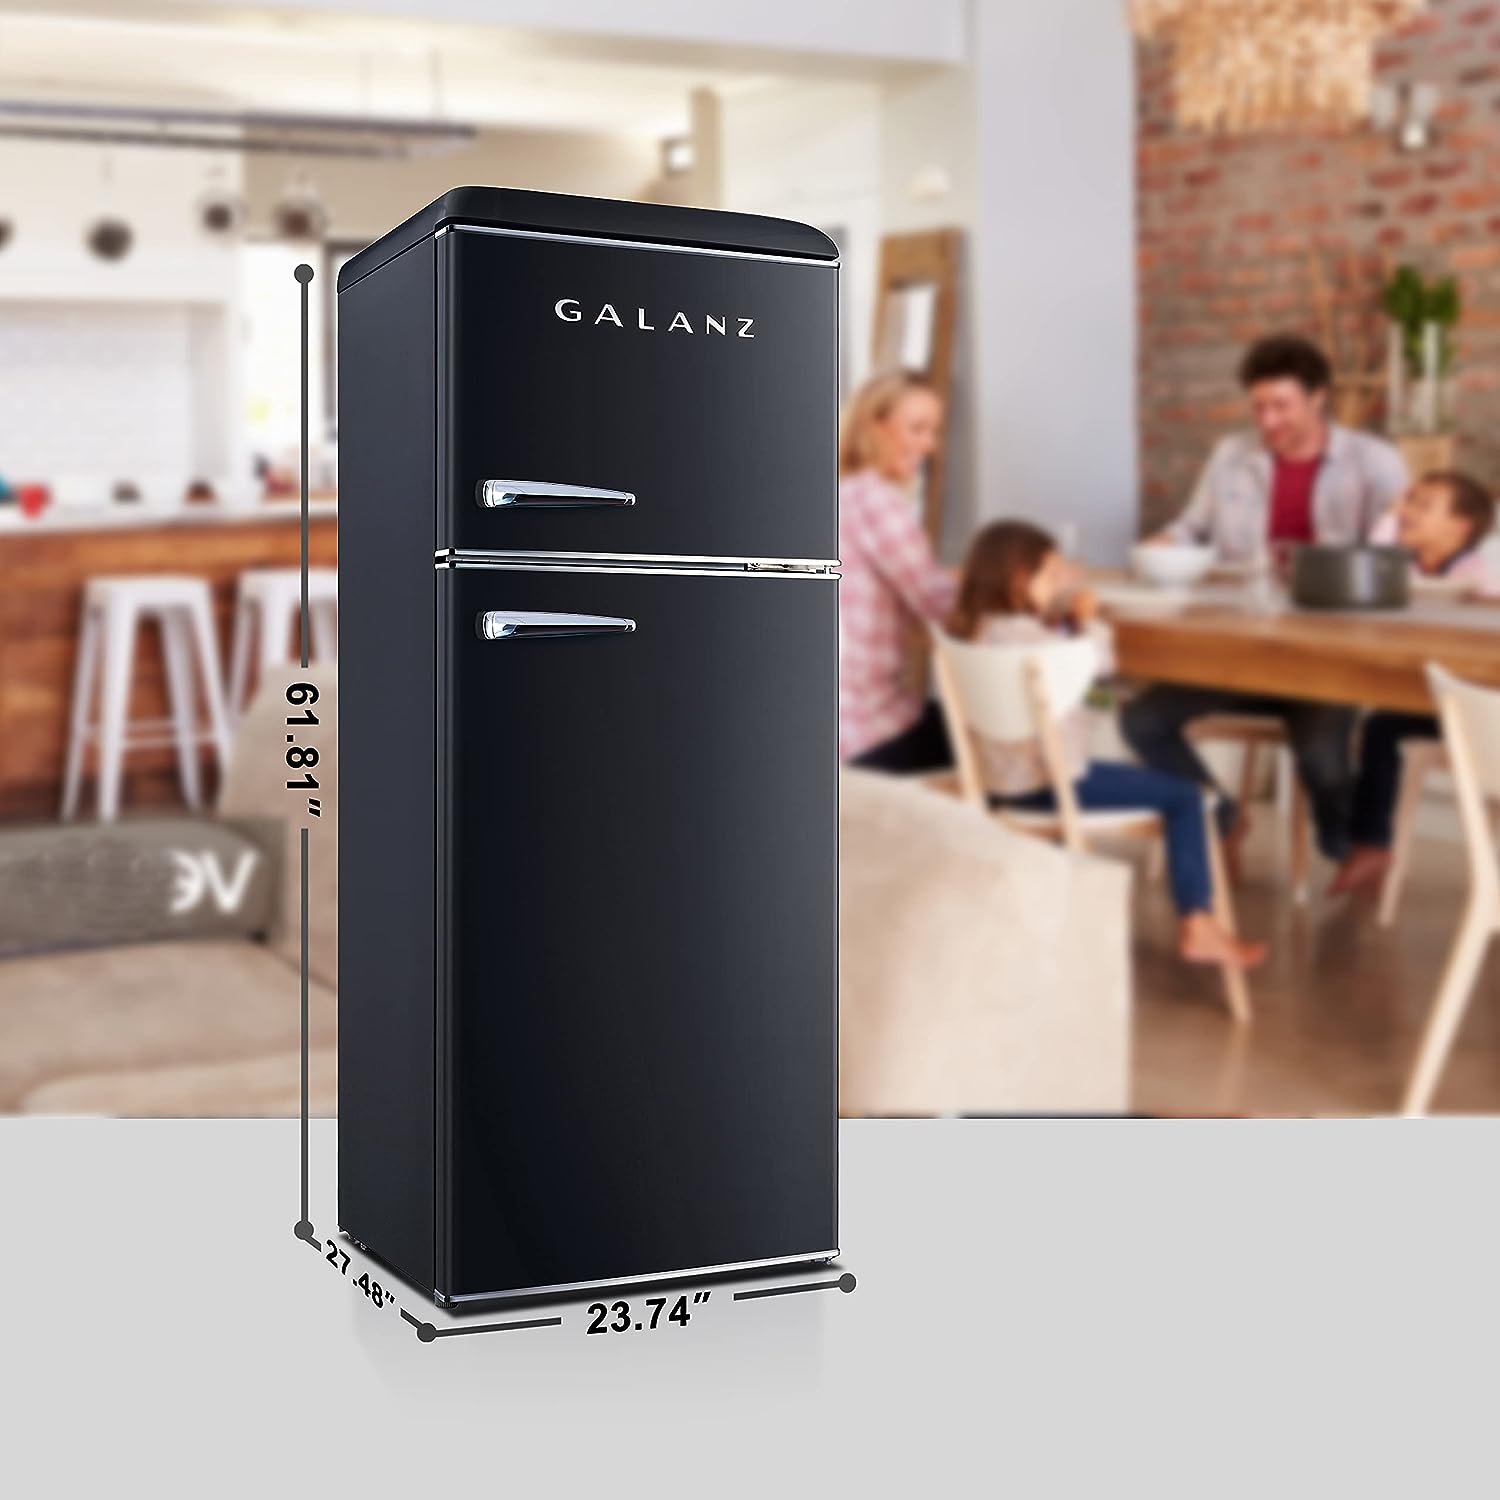 Galanz GLR10TBKEFR Retro Refrigerator with Top Freezer - $470